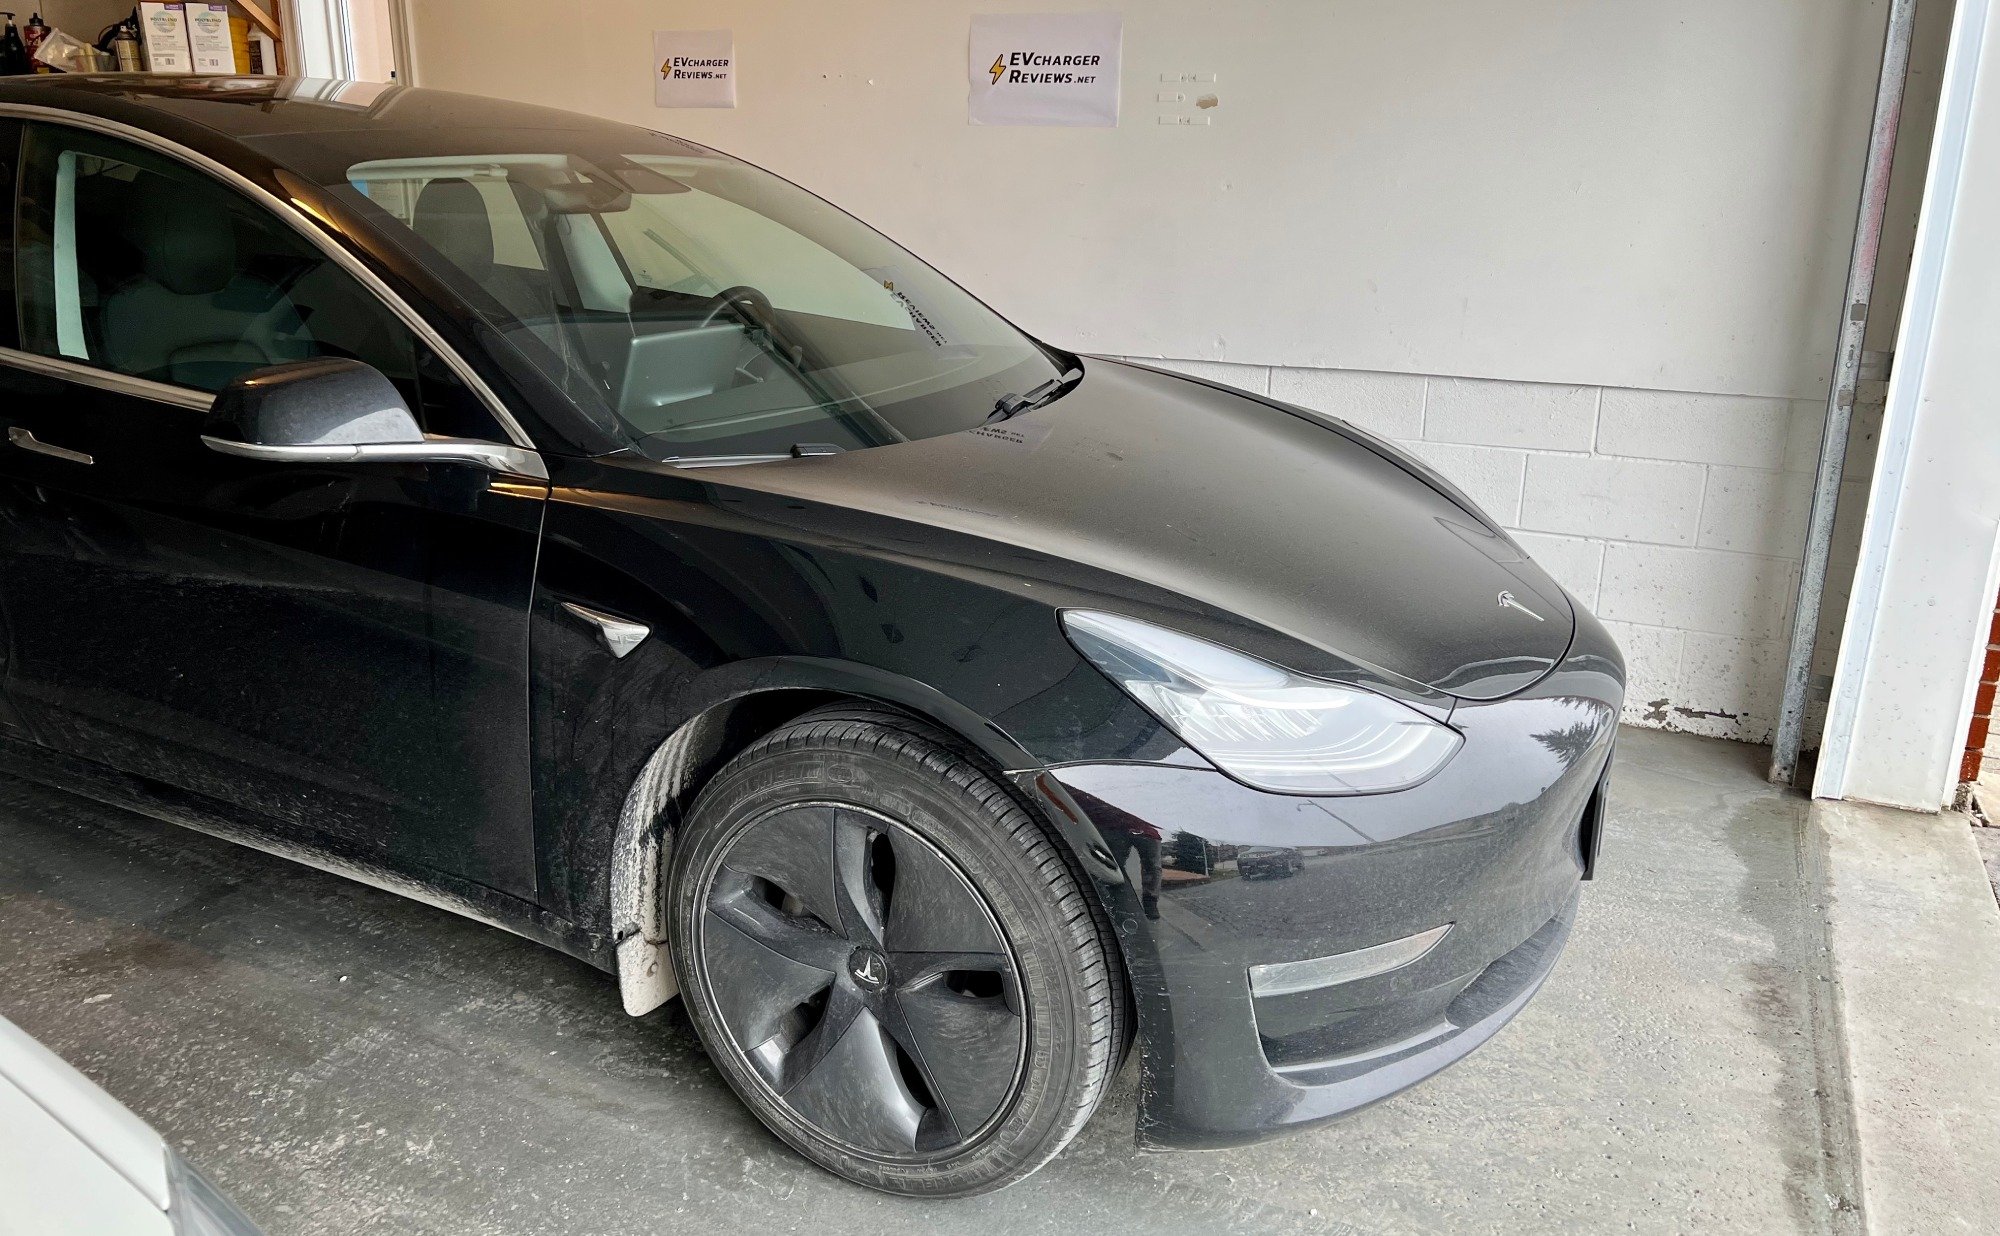 Best Home EV Charger for Tesla Model 3 Tested